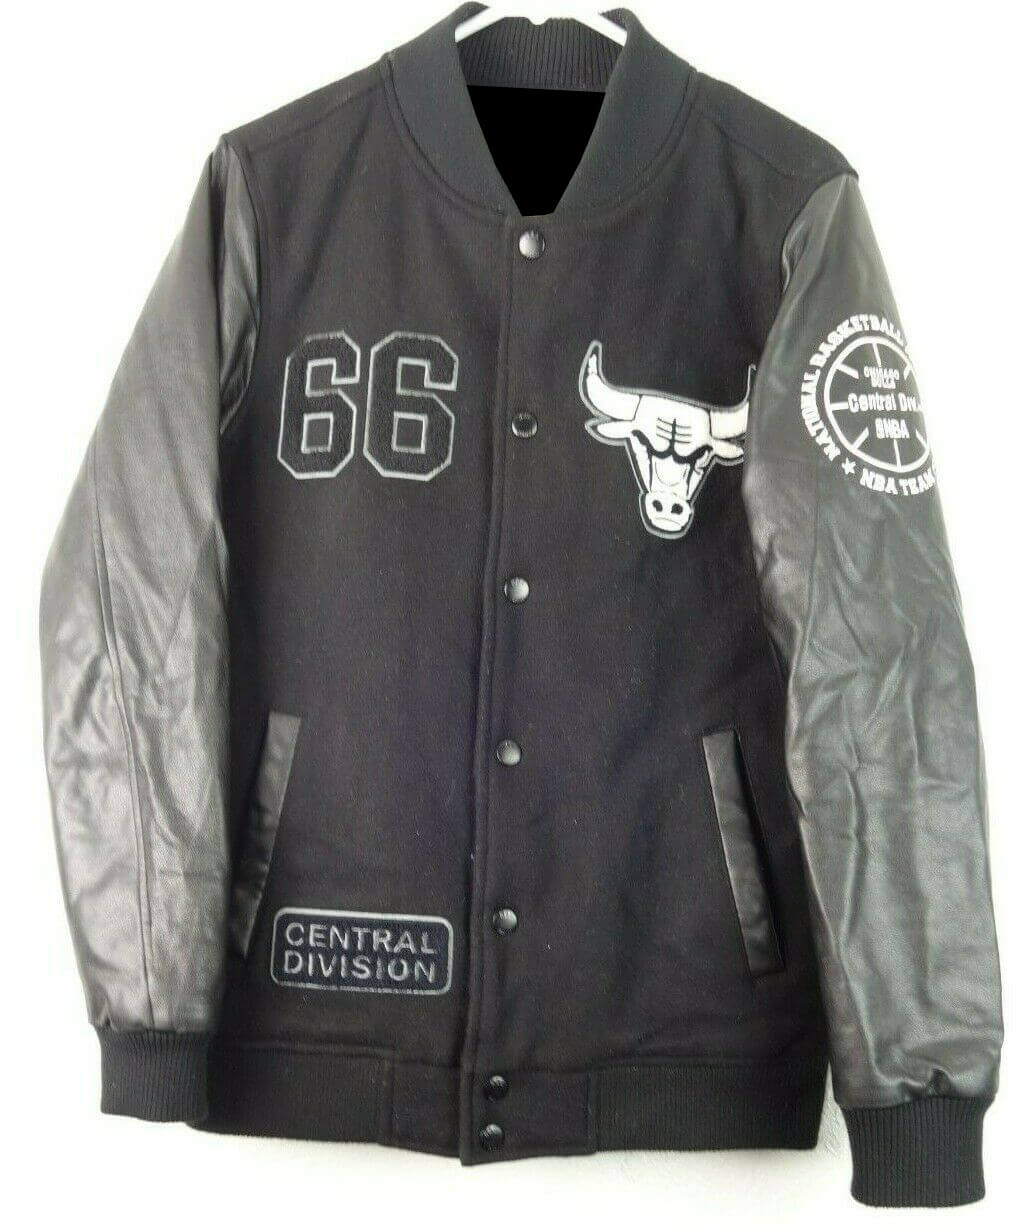 Sz. Medium Nba Varsity jacket Gray/black